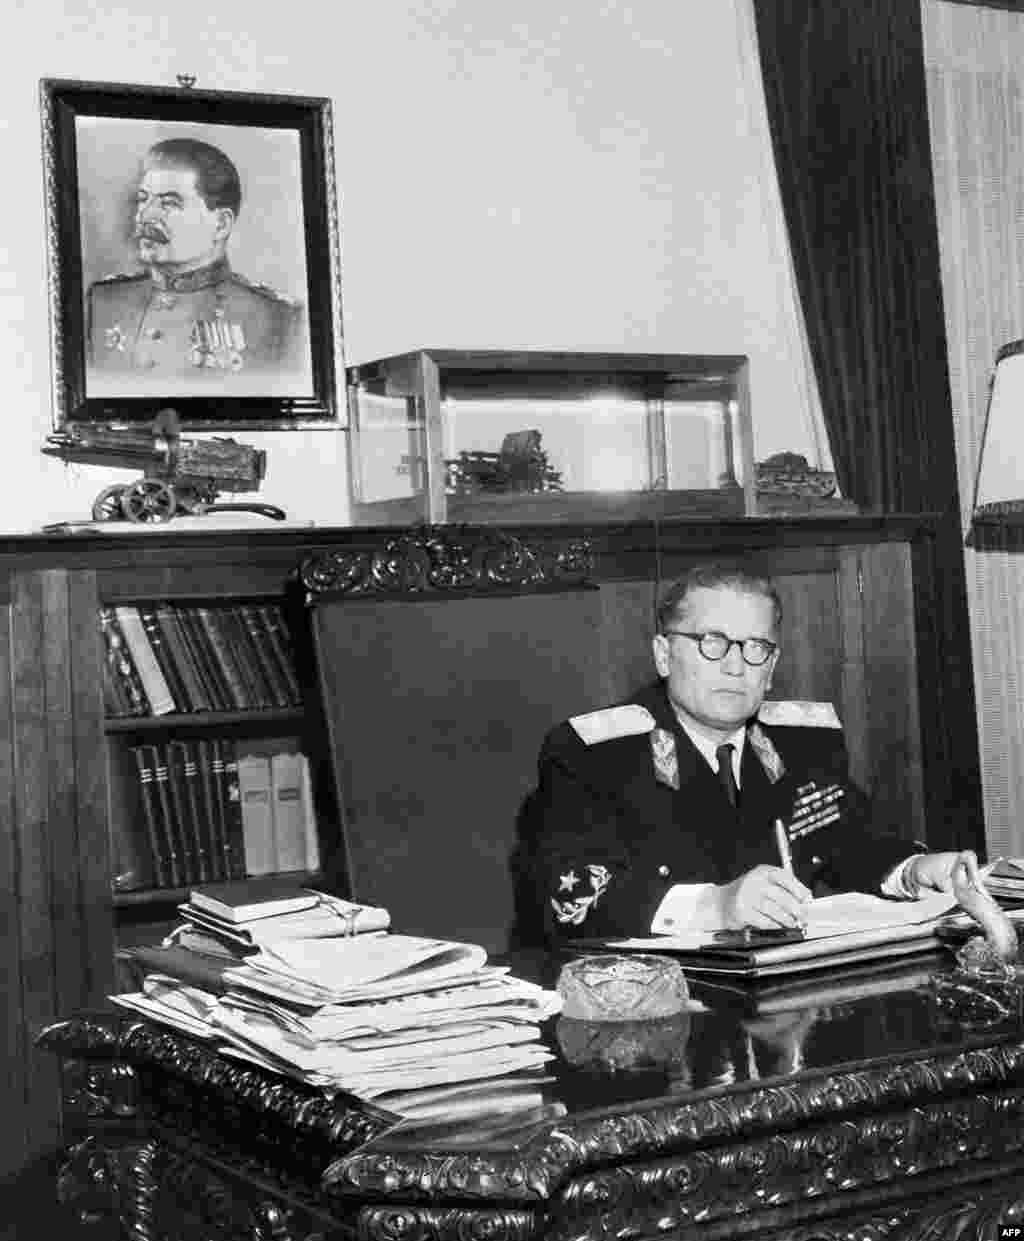 Josip Broz Tito az irodájában 1947-ben. Az országot lényegében egyeduralkodóként irányító Tito kezdetben a Szovjetunió és Sztálin politikáját követte, de hamarosan megromlott a viszony a két ország között. Egy sikertelen szovjet merényletkísérlet után Tito levelet küldött Sztálinnak, amelyben azt írta: &bdquo;Ne küldj több embert, hogy megöljenek. Már így is elkaptunk ötöt, az egyiknél egy bomba volt, a másiknál egy puska&hellip; Ha nem hagysz fel a gyilkosok küldésével, akkor én fogok egyet Moszkvába küldeni, és nem lesz szükség másodikra.&rdquo; Ezekben az időkben történt, hogy Sztálin tanácsára Rákosi Mátyás Rajk László koncepciós perében azt is az elítélt számlájára írta, hogy titokban kapcsolata volt a Jugoszláv vezetéssel.